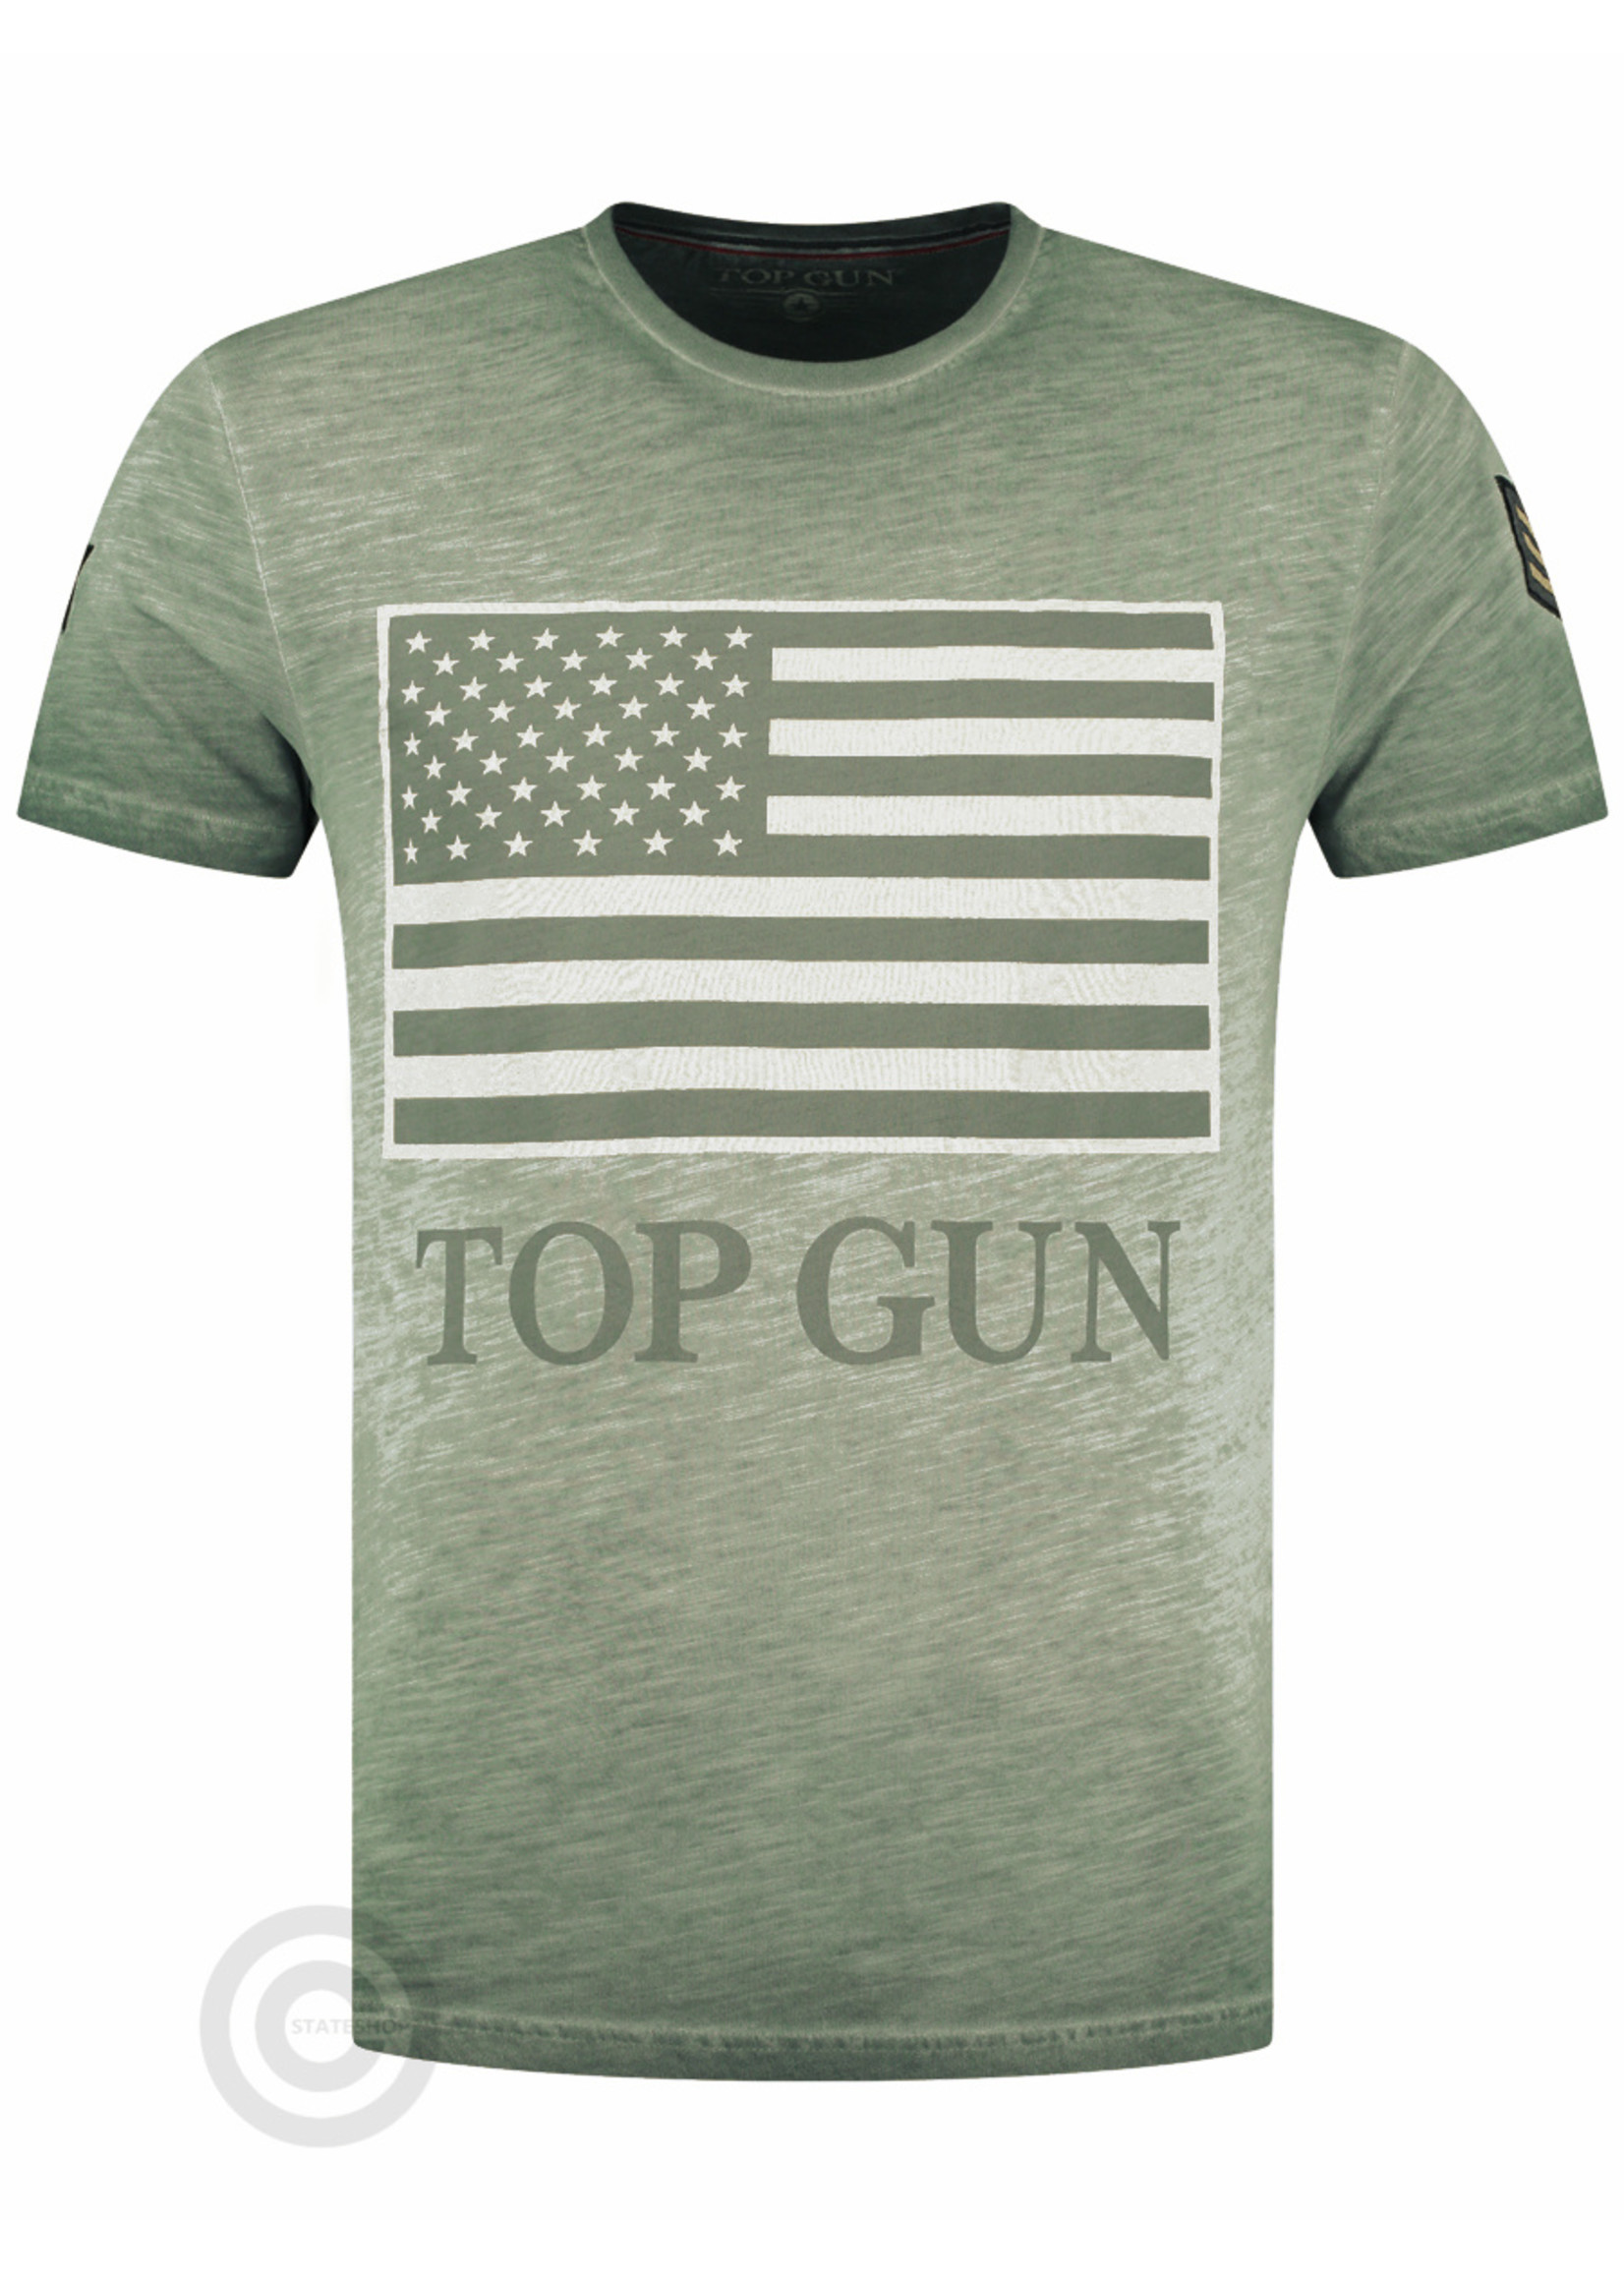 Top Gun Top Gun T-Shirt, Round Neck Cotton "US Vintage Flag" Army